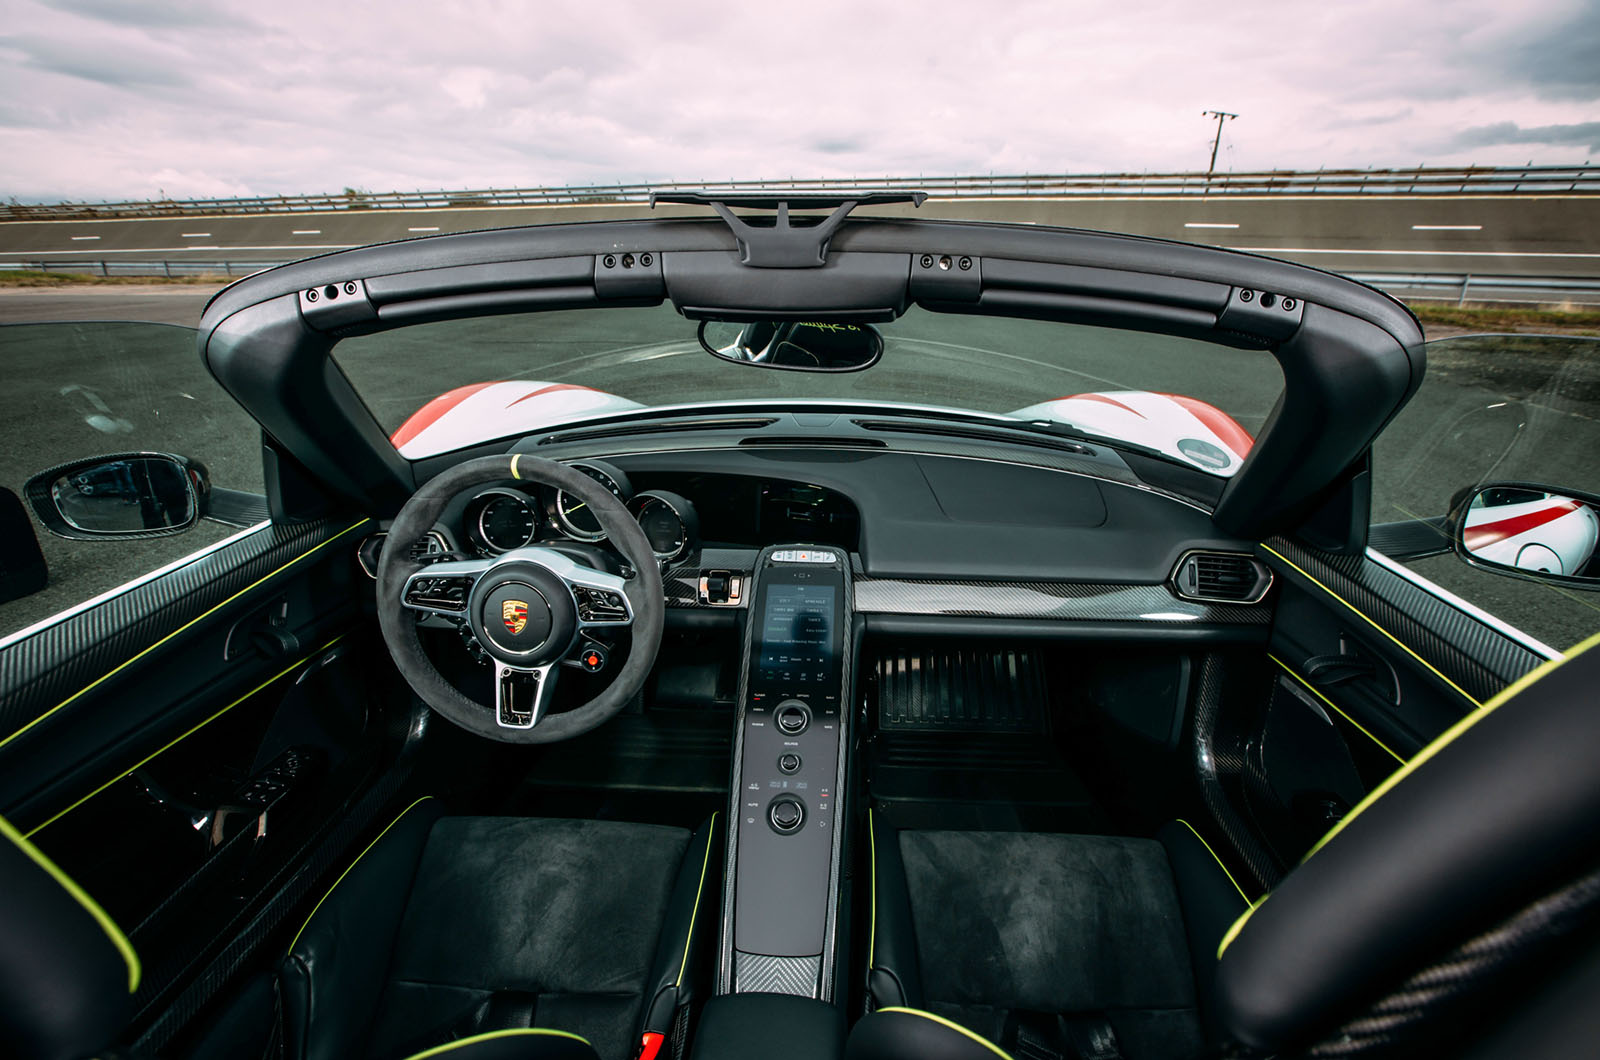 Porsche 918 Spyder dashboard